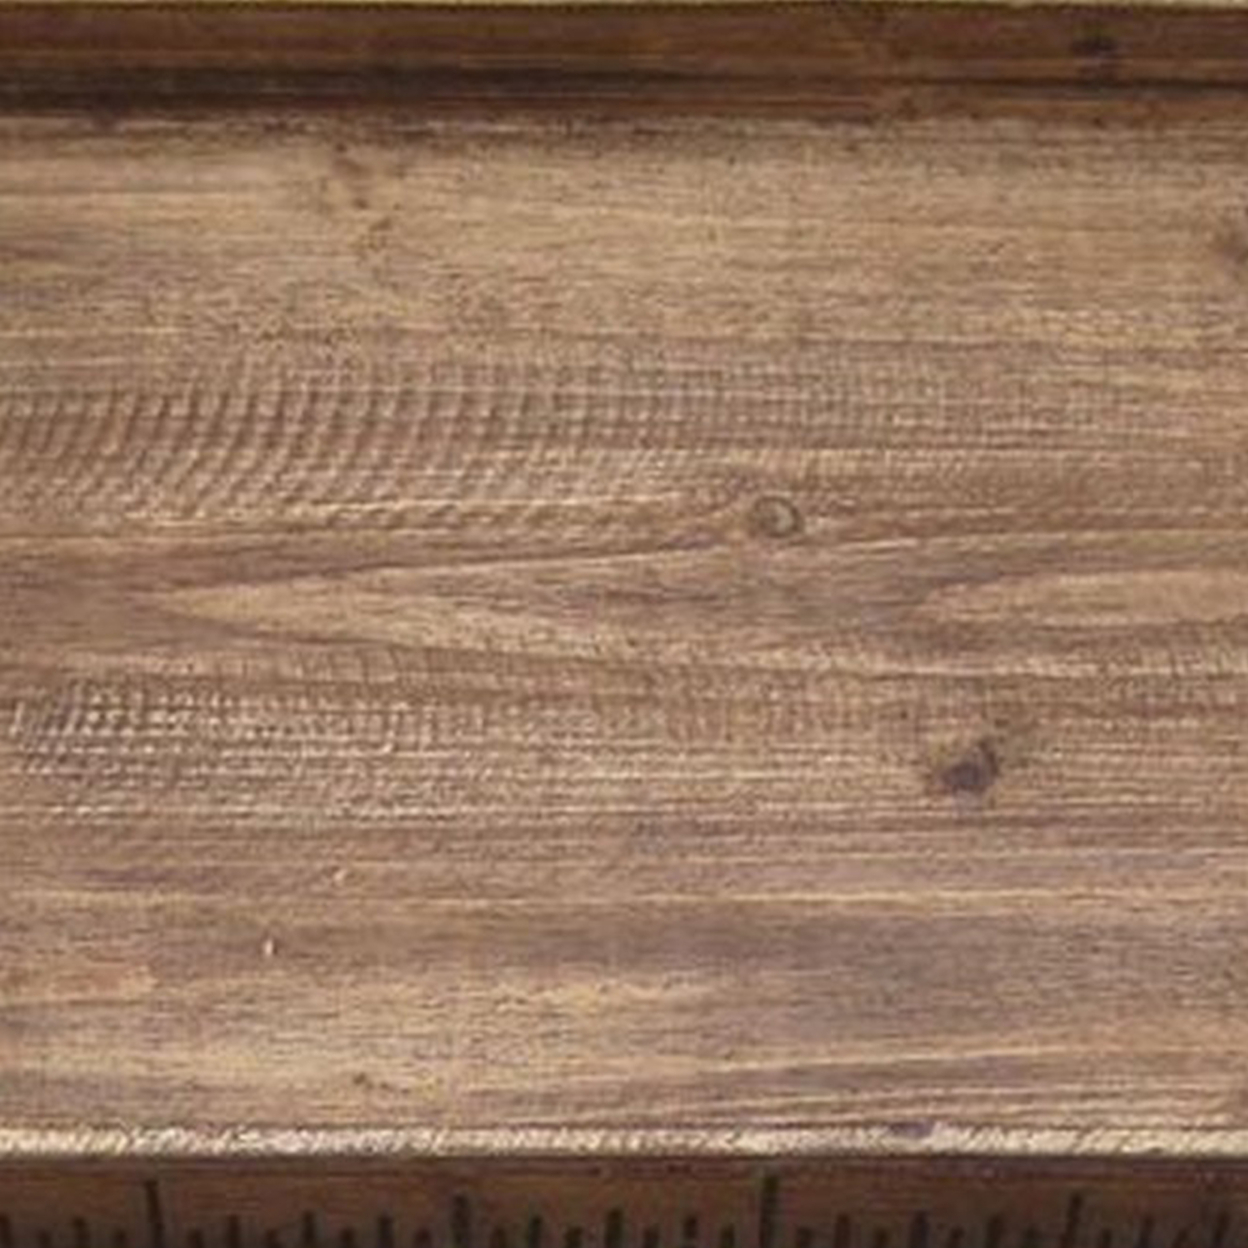 Rough Sawn Textured Rectangular Wooden Ruler Tray, Set Of 3, Brown- Saltoro Sherpi